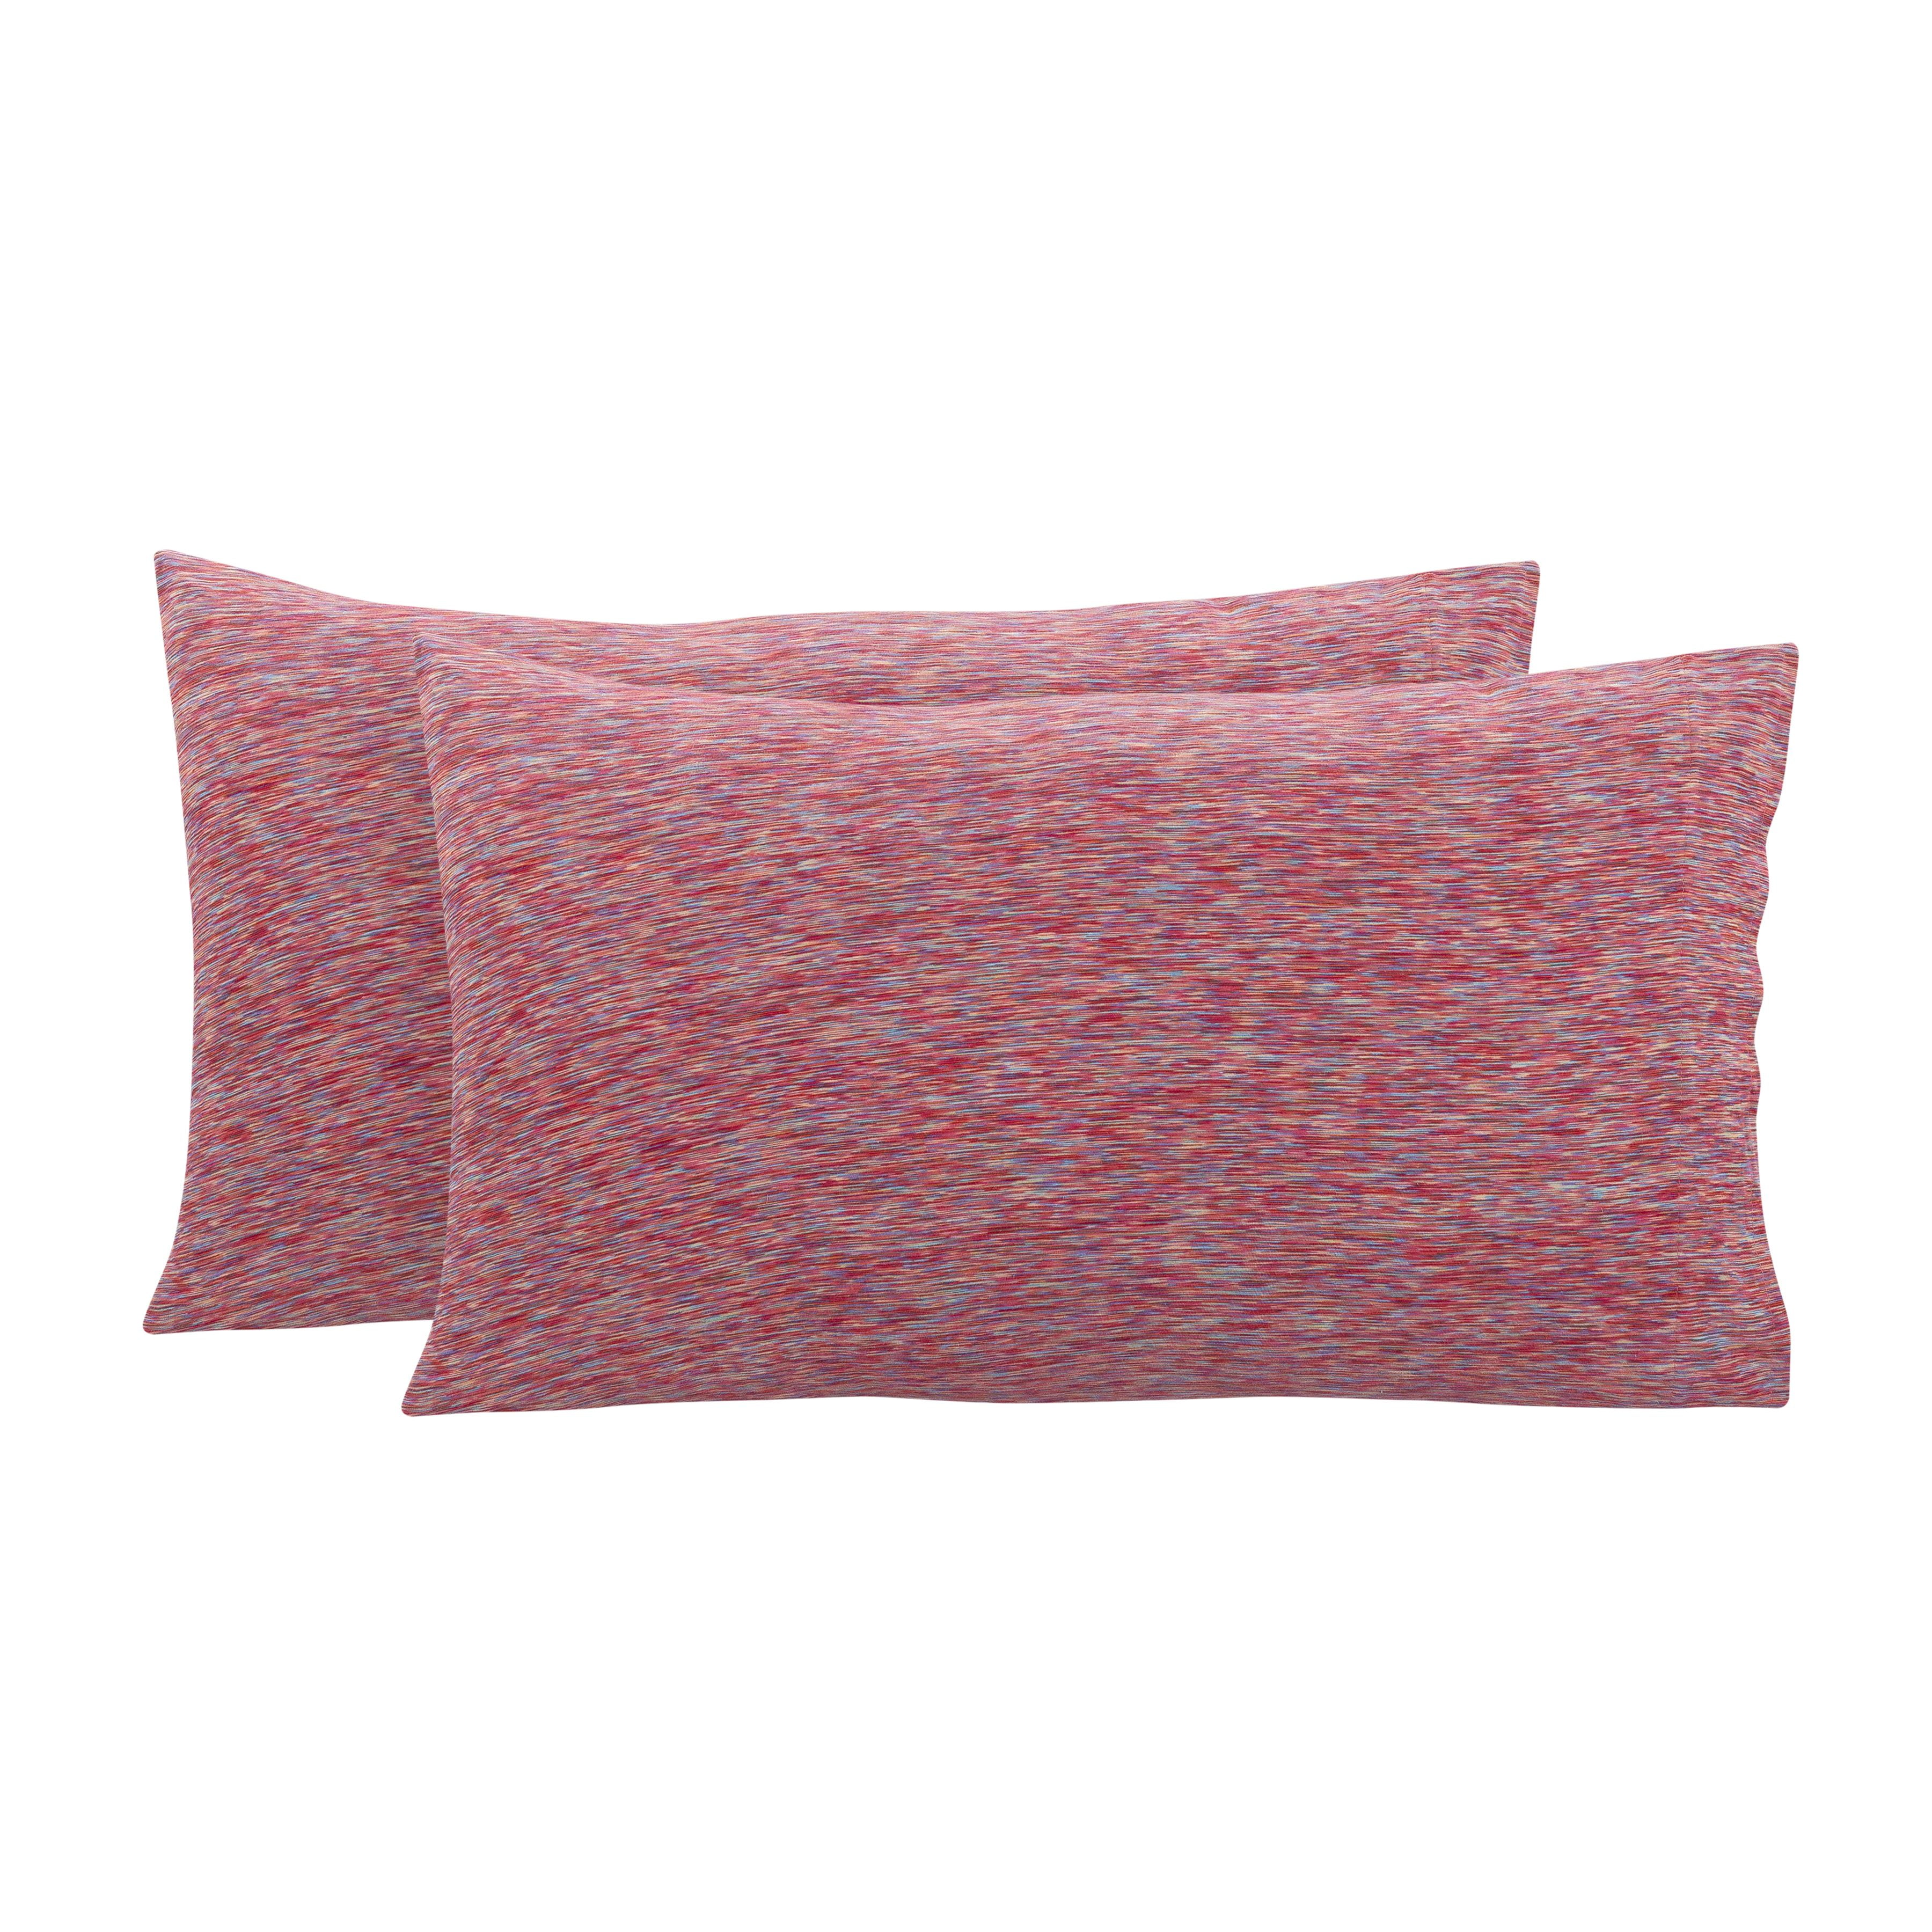 Mainstays Jersey Extra Soft Pillowcase Set, Standard/Queen, Grey Heather, 2  Pcs 